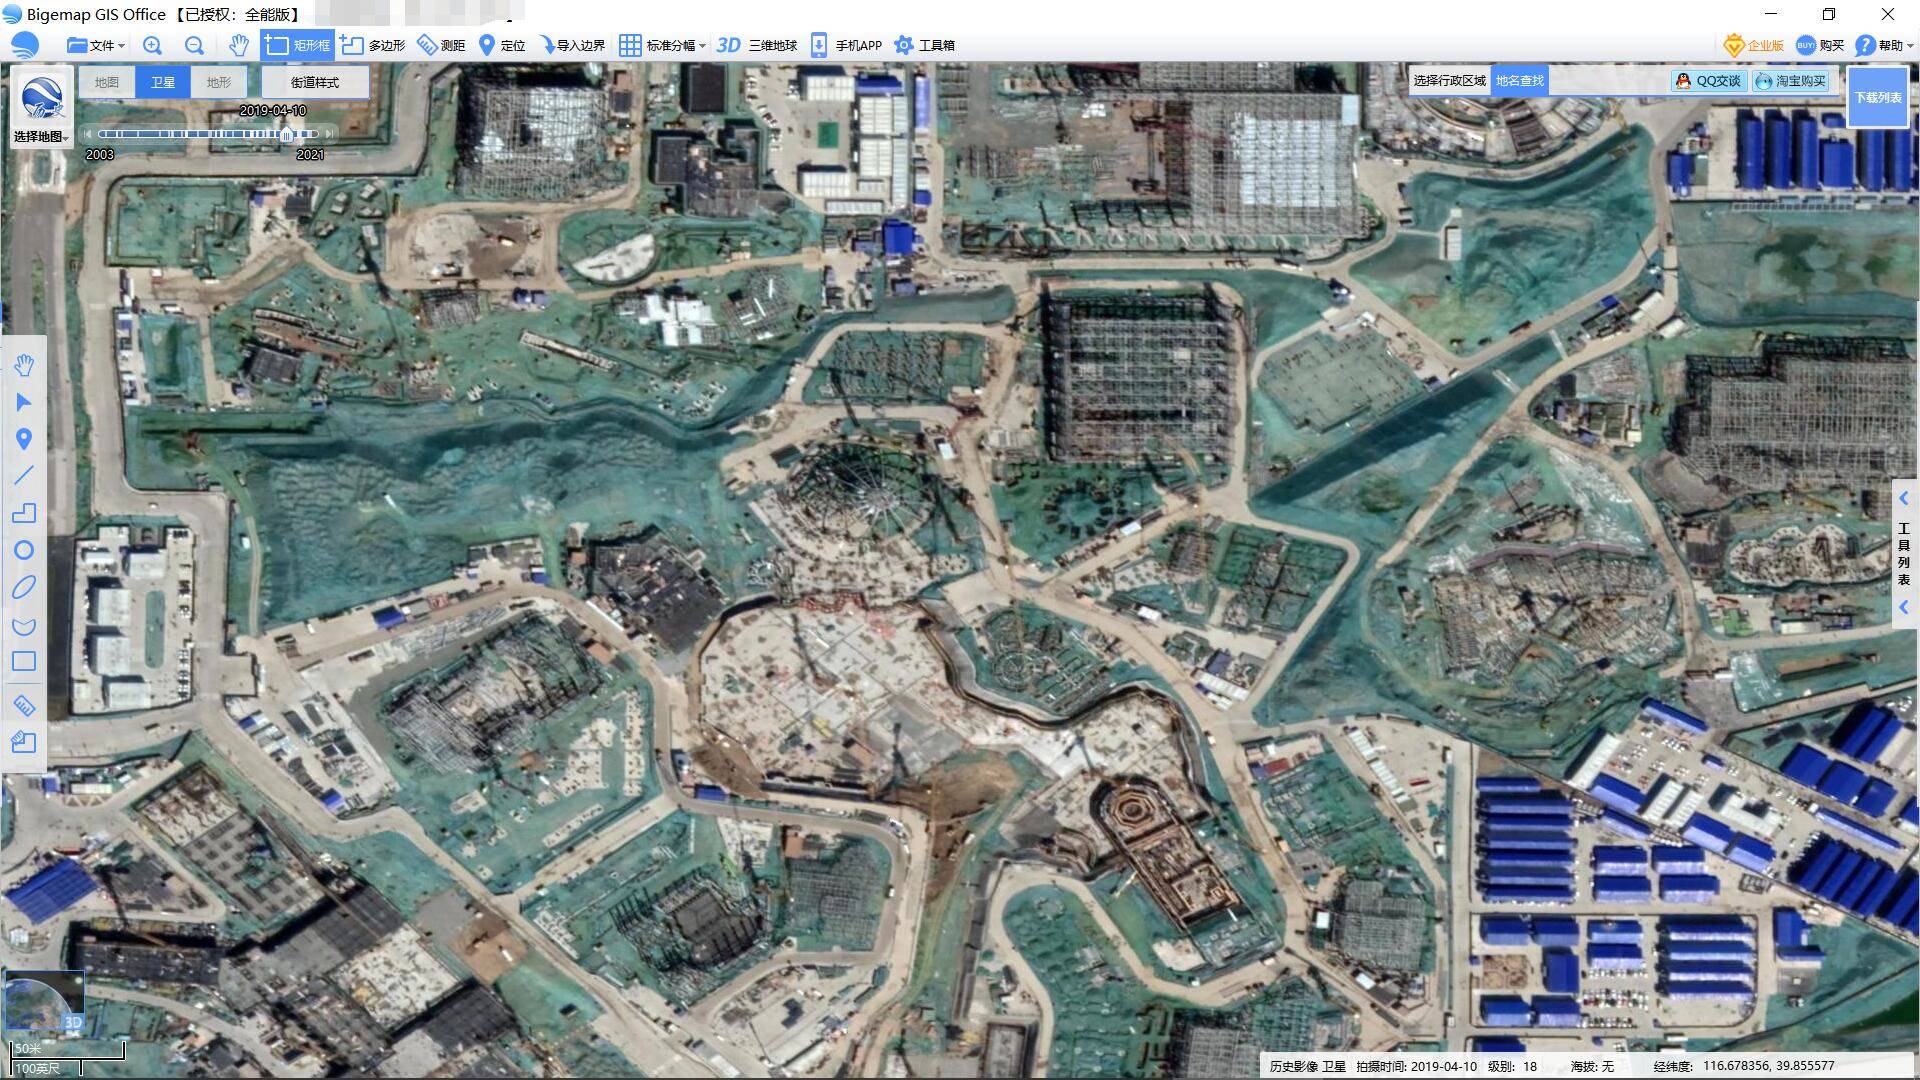 北京环球2019历史卫星地图(卫星地图来源:bigemap大地图)